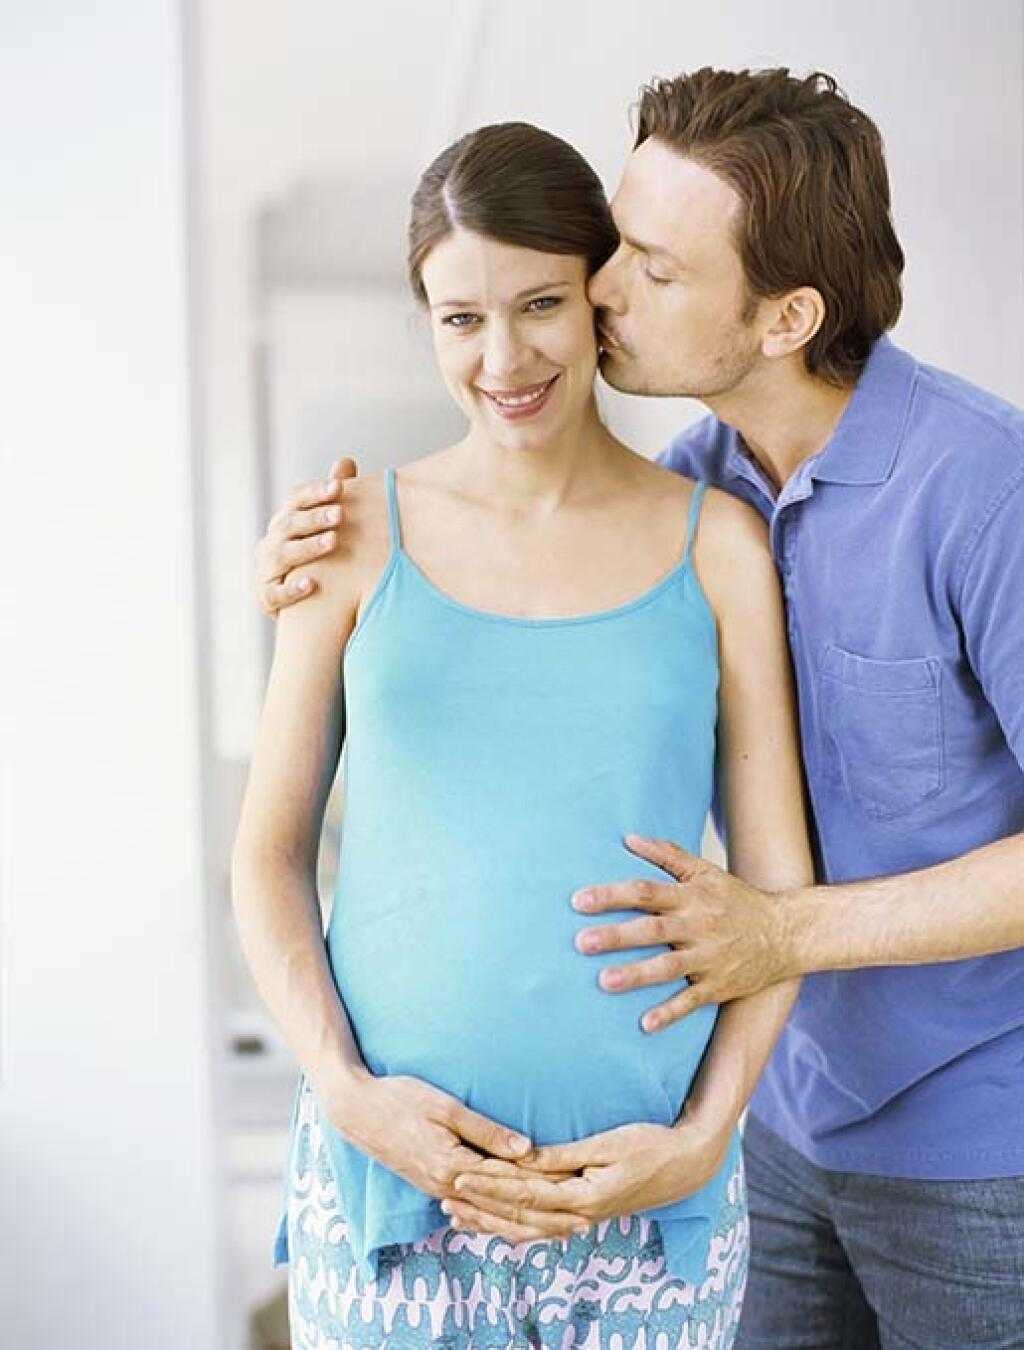 Подготовка к зачатию ребенка: с чего начать и что обследовать?